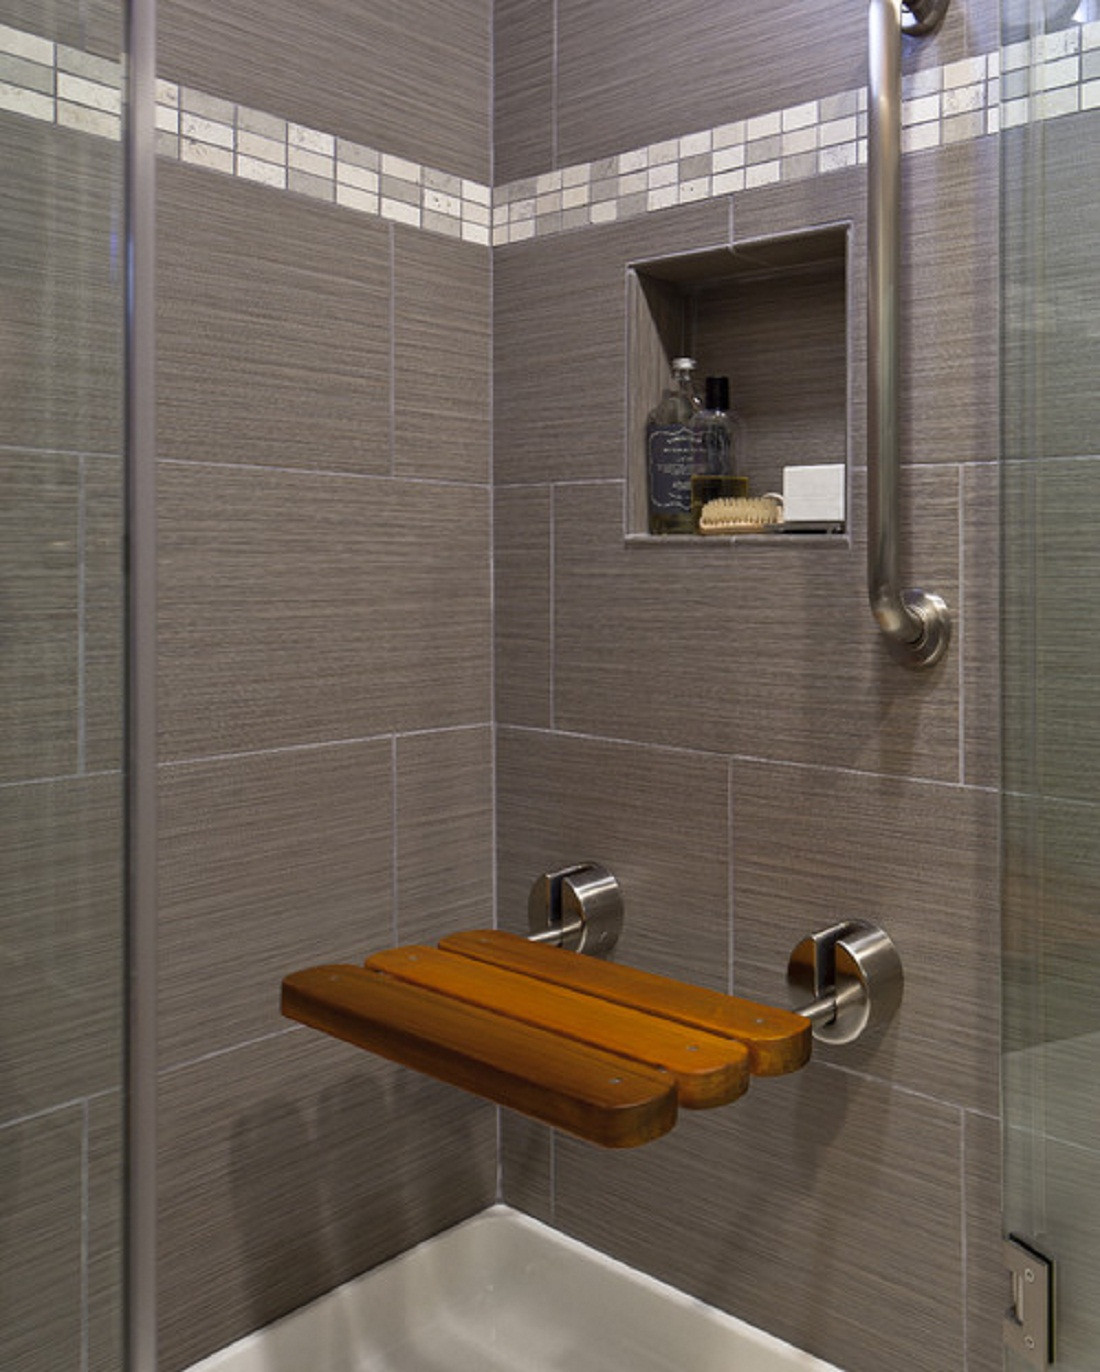 Bathroom And Shower Tile Ideas
 50 magnificent ultra modern bathroom tile ideas photos